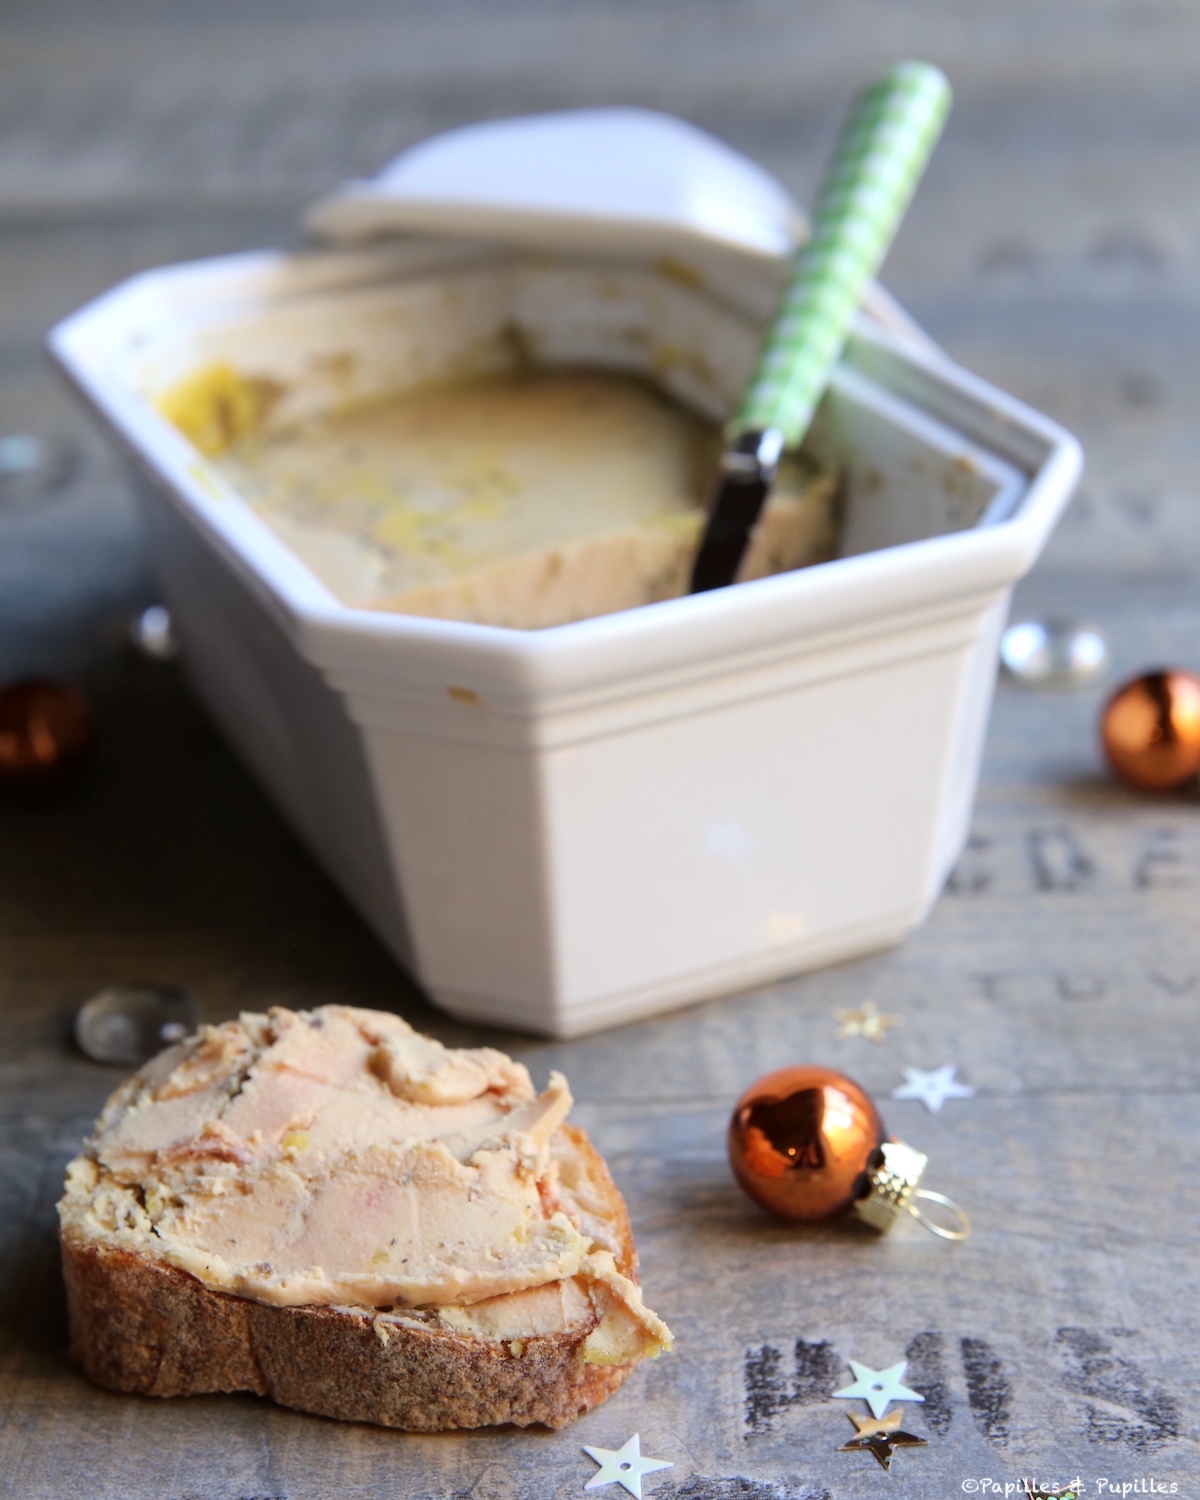 MAISON MONTFORT Foie gras de canard cru surgelé éveiné 10 parts 450g pas  cher 